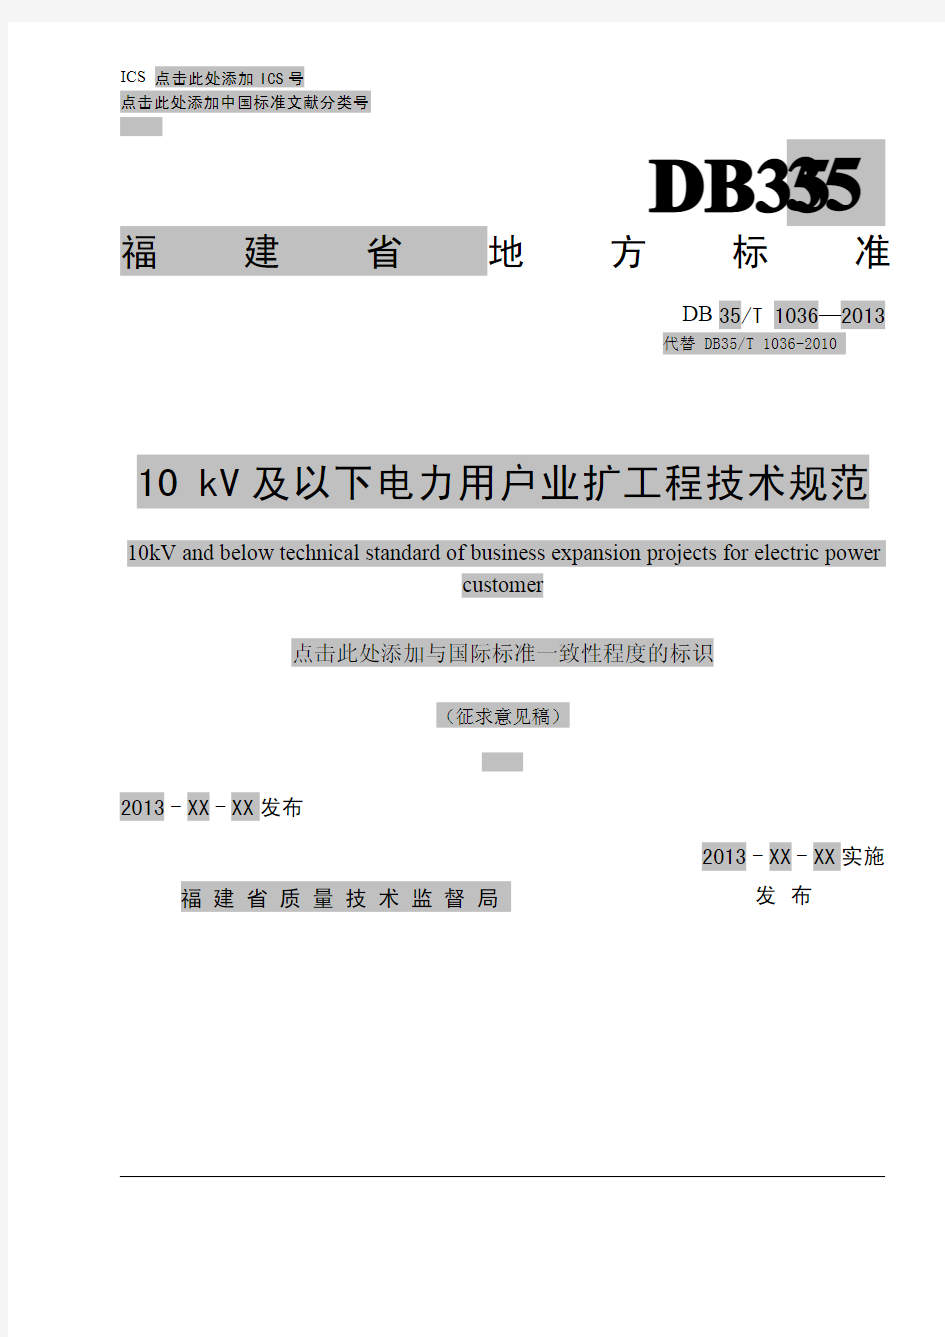 福建省地方标准DB35 10 kv及以下电力用户业扩工程技术规范(0110)